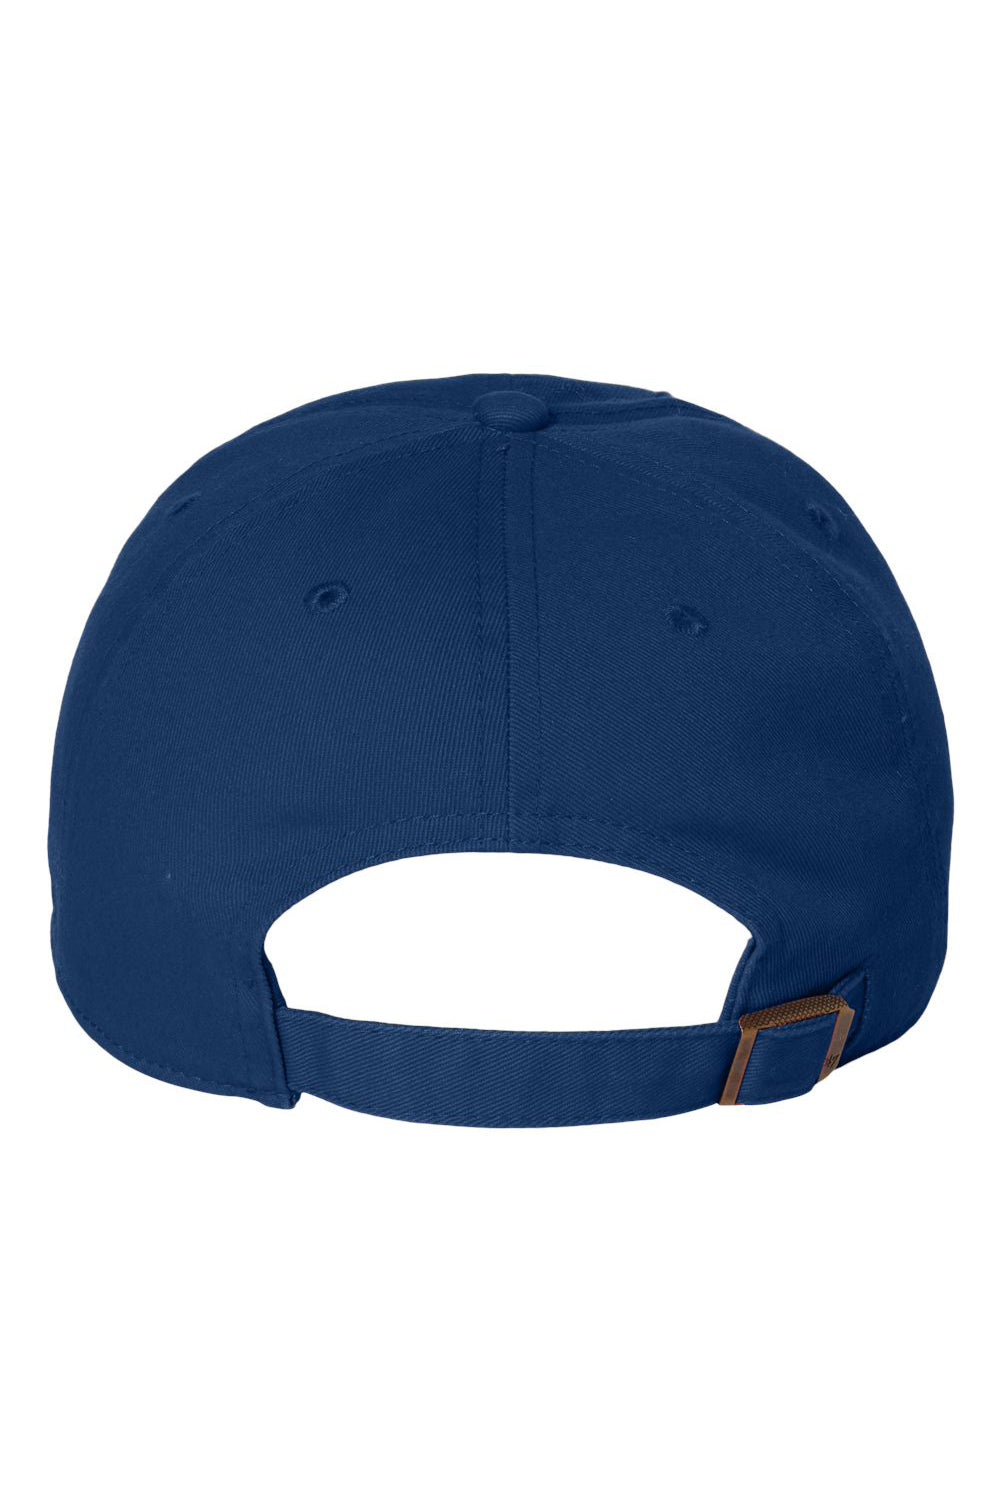 47 Brand 4700 Mens Clean Up Adjustable Hat Royal Blue Flat Back